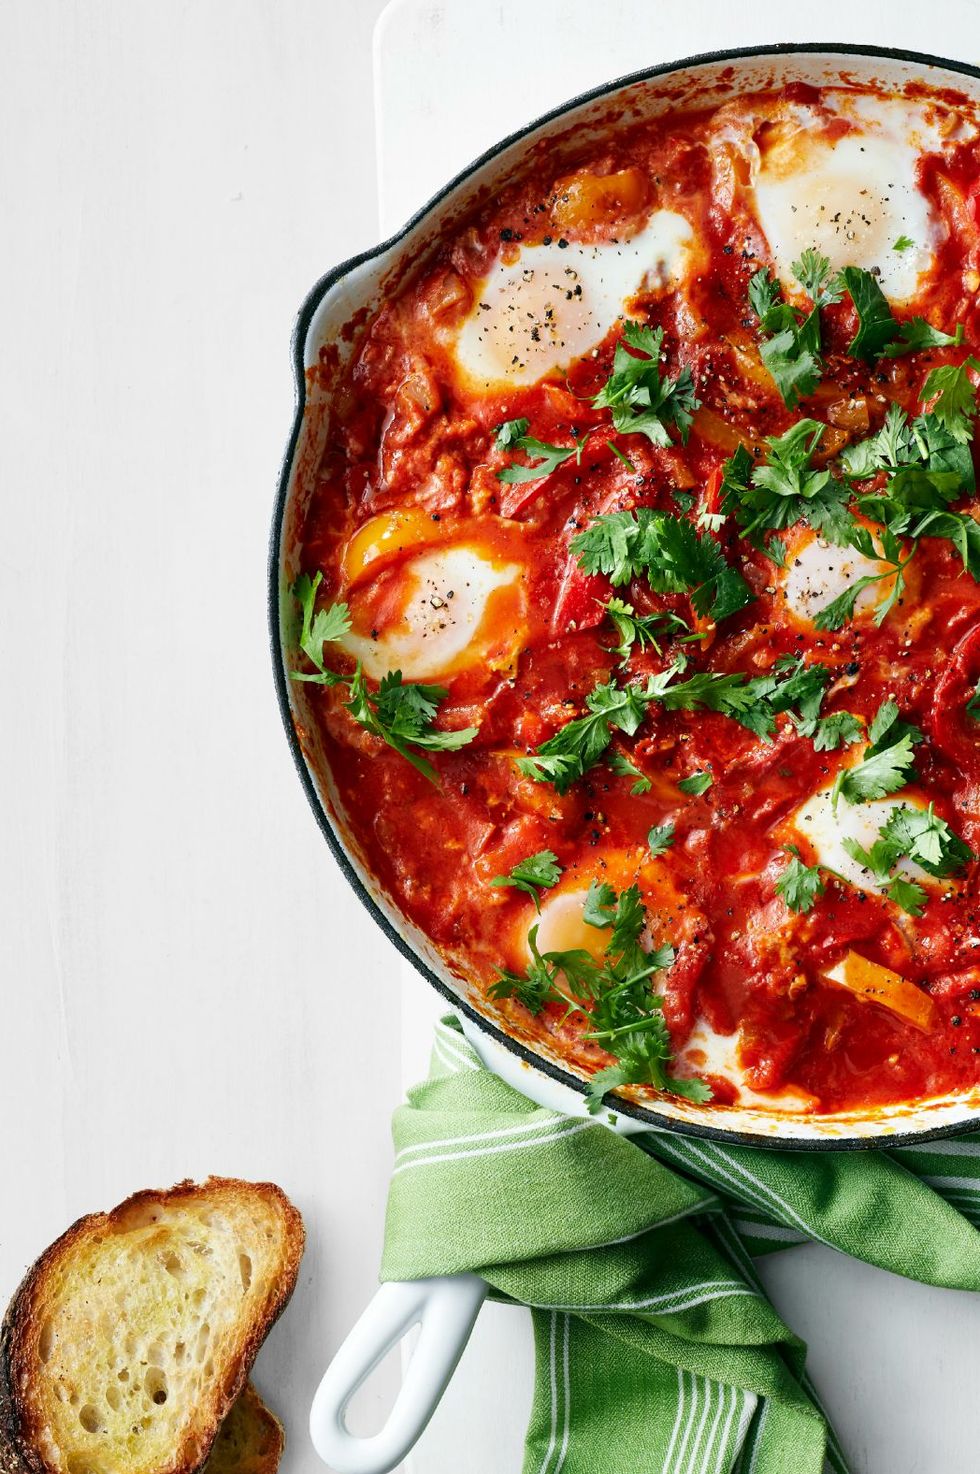 20 Egg Recipes for Breakfast - Easy Egg Casseroles, Omlelets & More Ideas